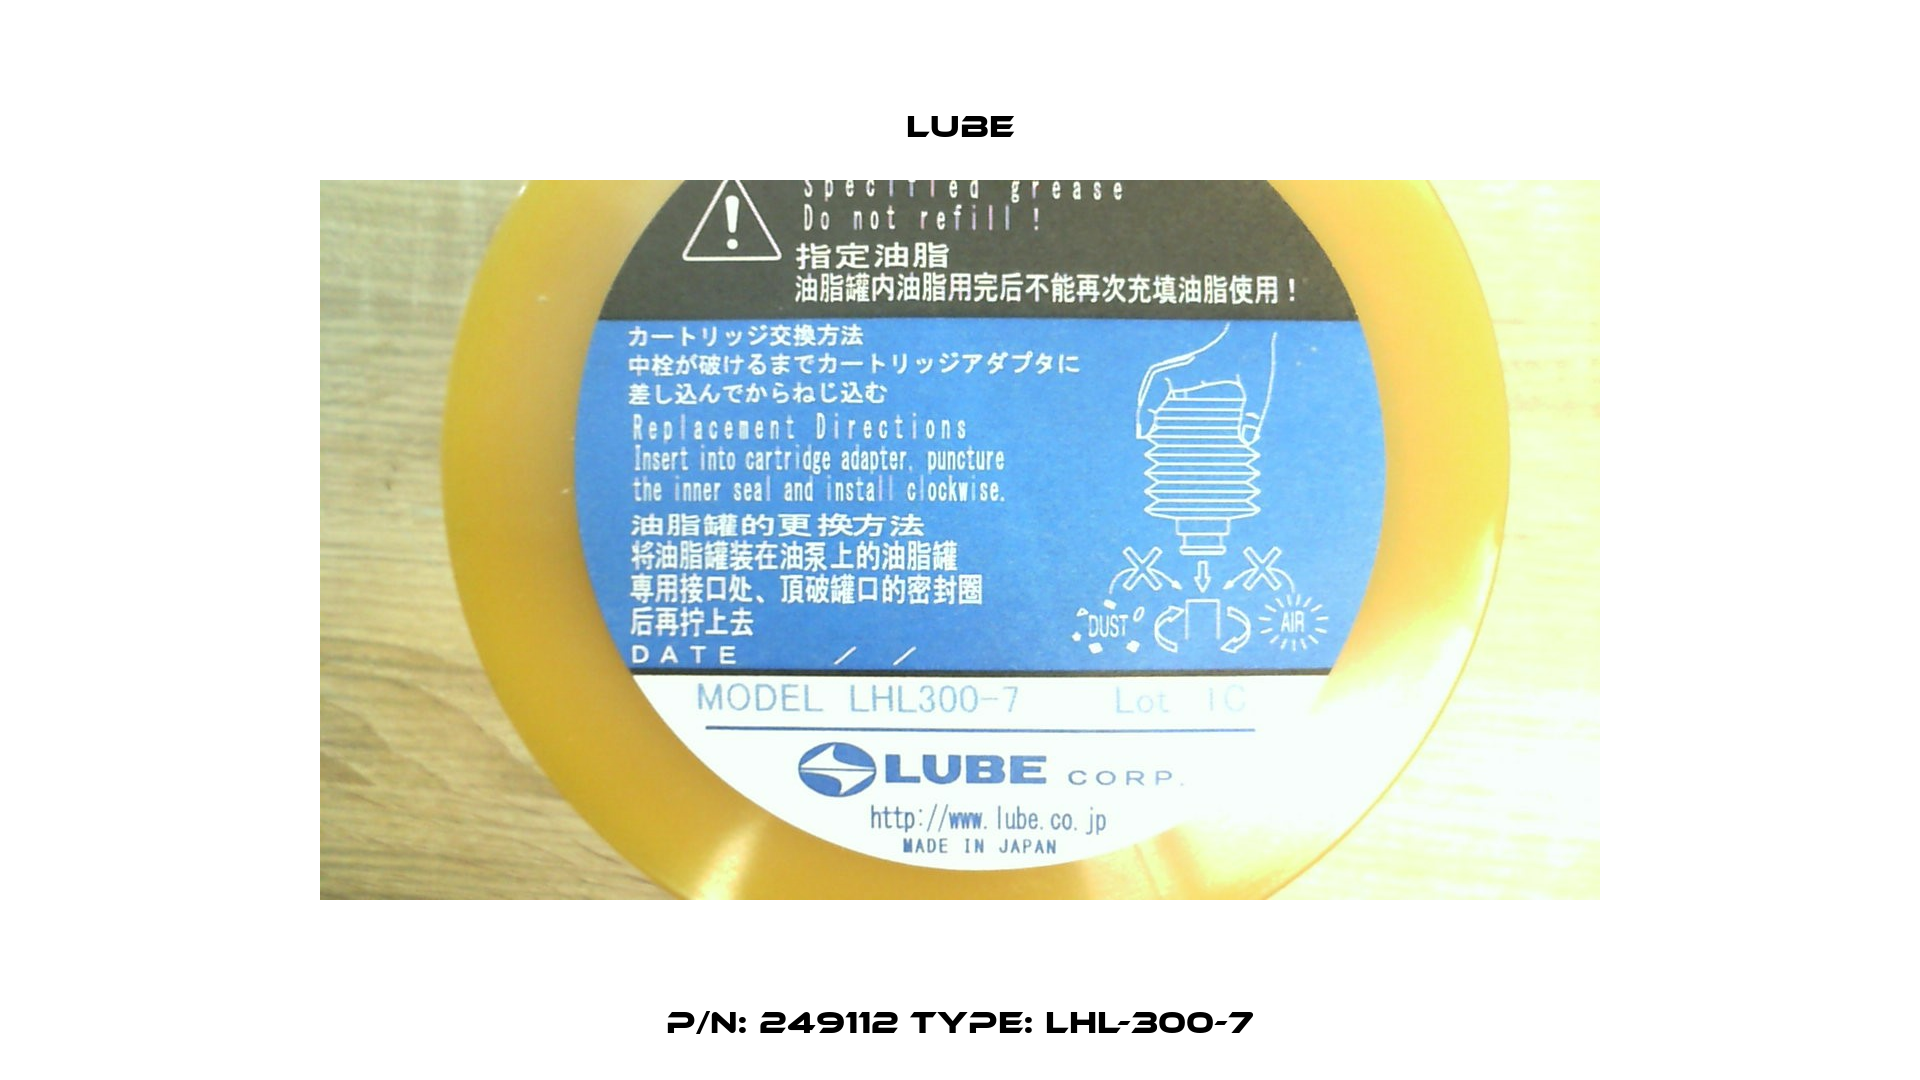 p/n: 249112 type: LHL-300-7 Lube